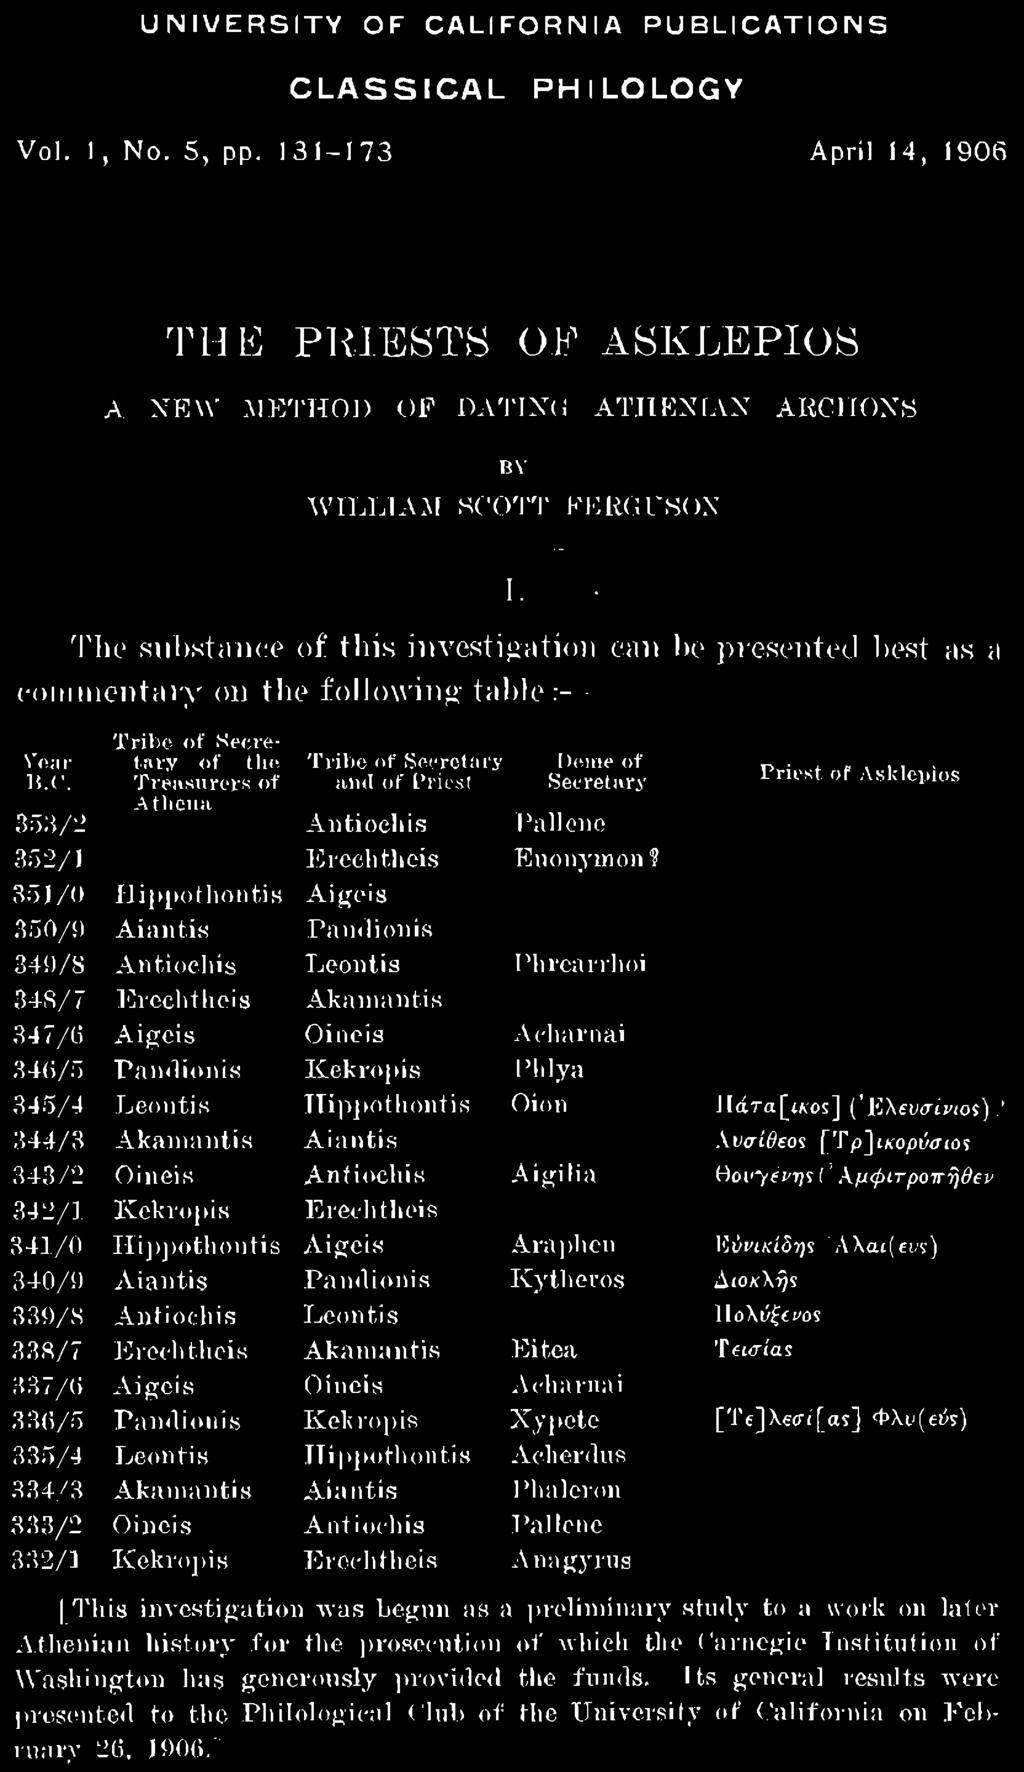 [Te]Xetrt[as] Φλυ(ει>5) 335/4 Leontis Hippothontis Aclierdus 334/3 Akaniantis Aiantis Phaleron 333/2 Oineis Antiochis Pallene 332/1 Kekropis Erechtheis